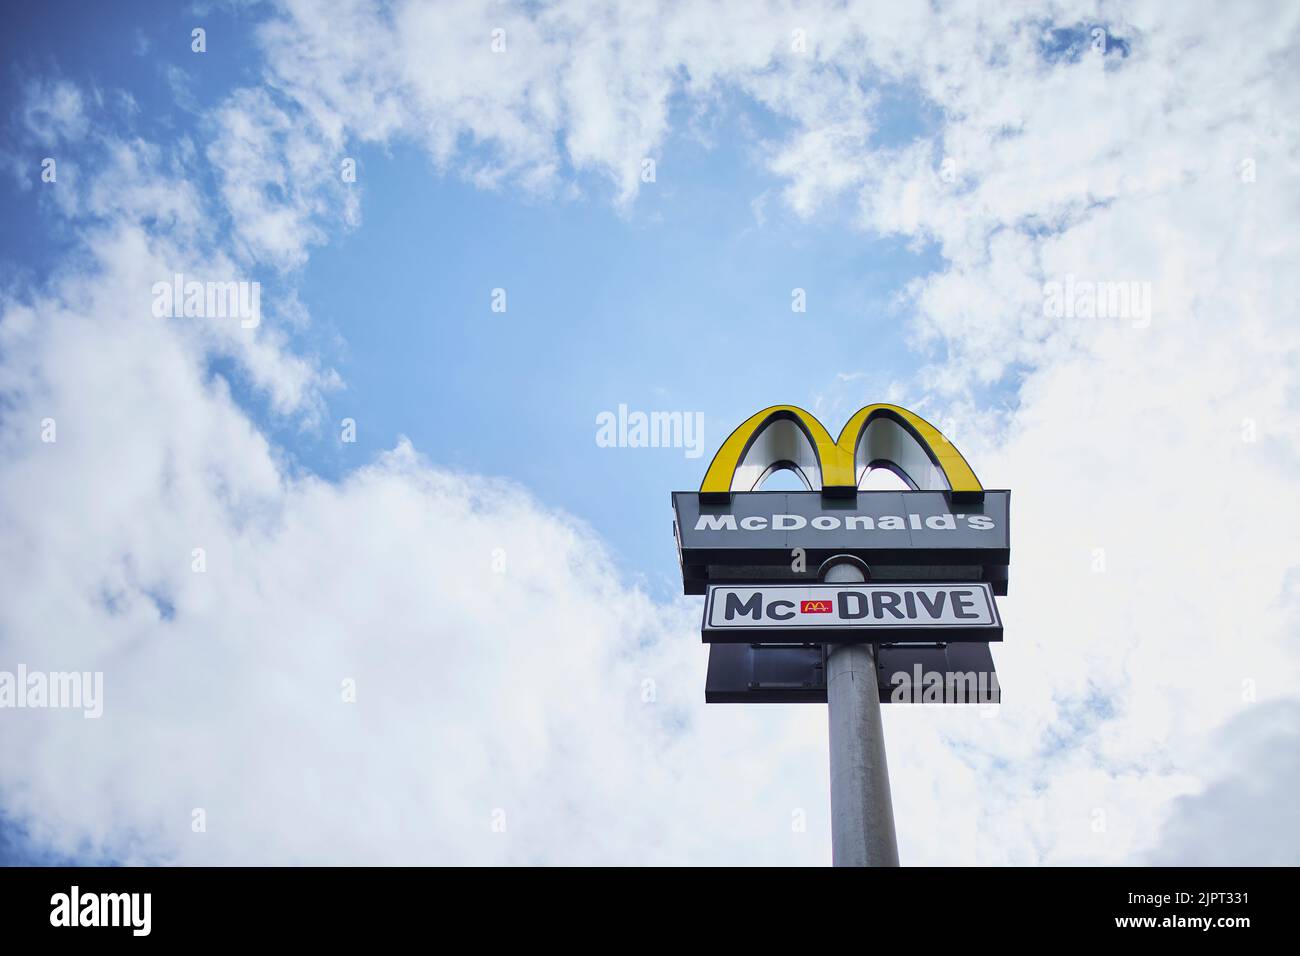 Un'inquadratura a basso angolo del logo di un fast food sotto un cielo nuvoloso blu Foto Stock